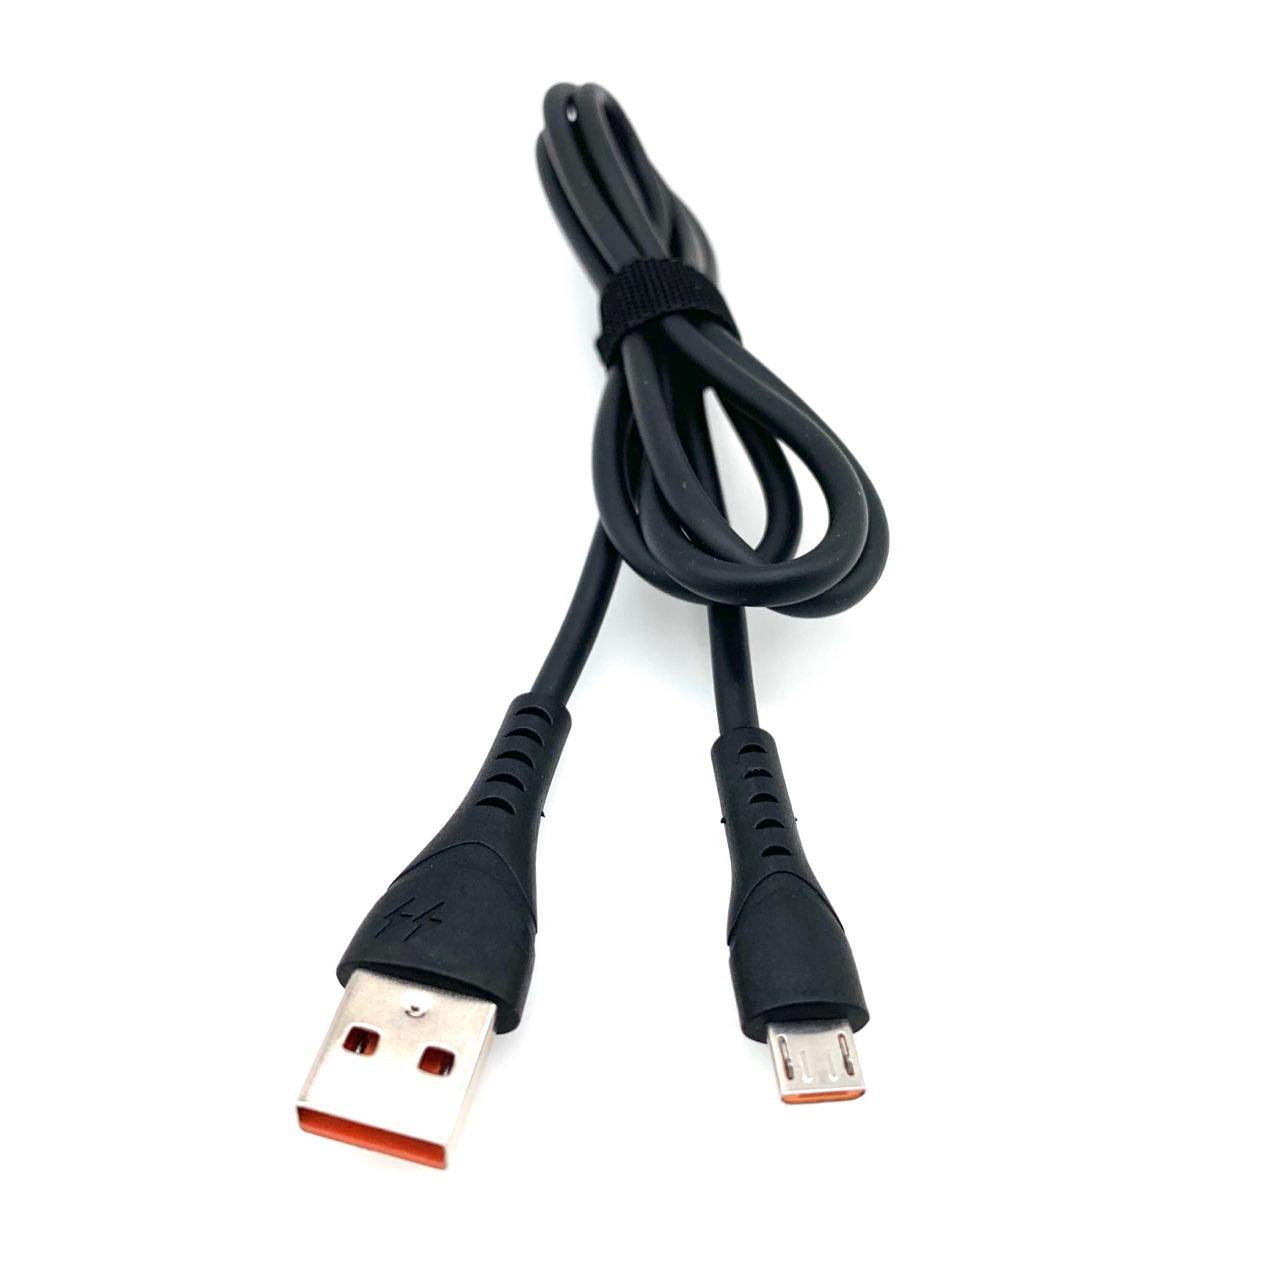 USB Дата-кабель "G03" micro USB силиконовый 1 метр чёрный, оранжевые контакты.